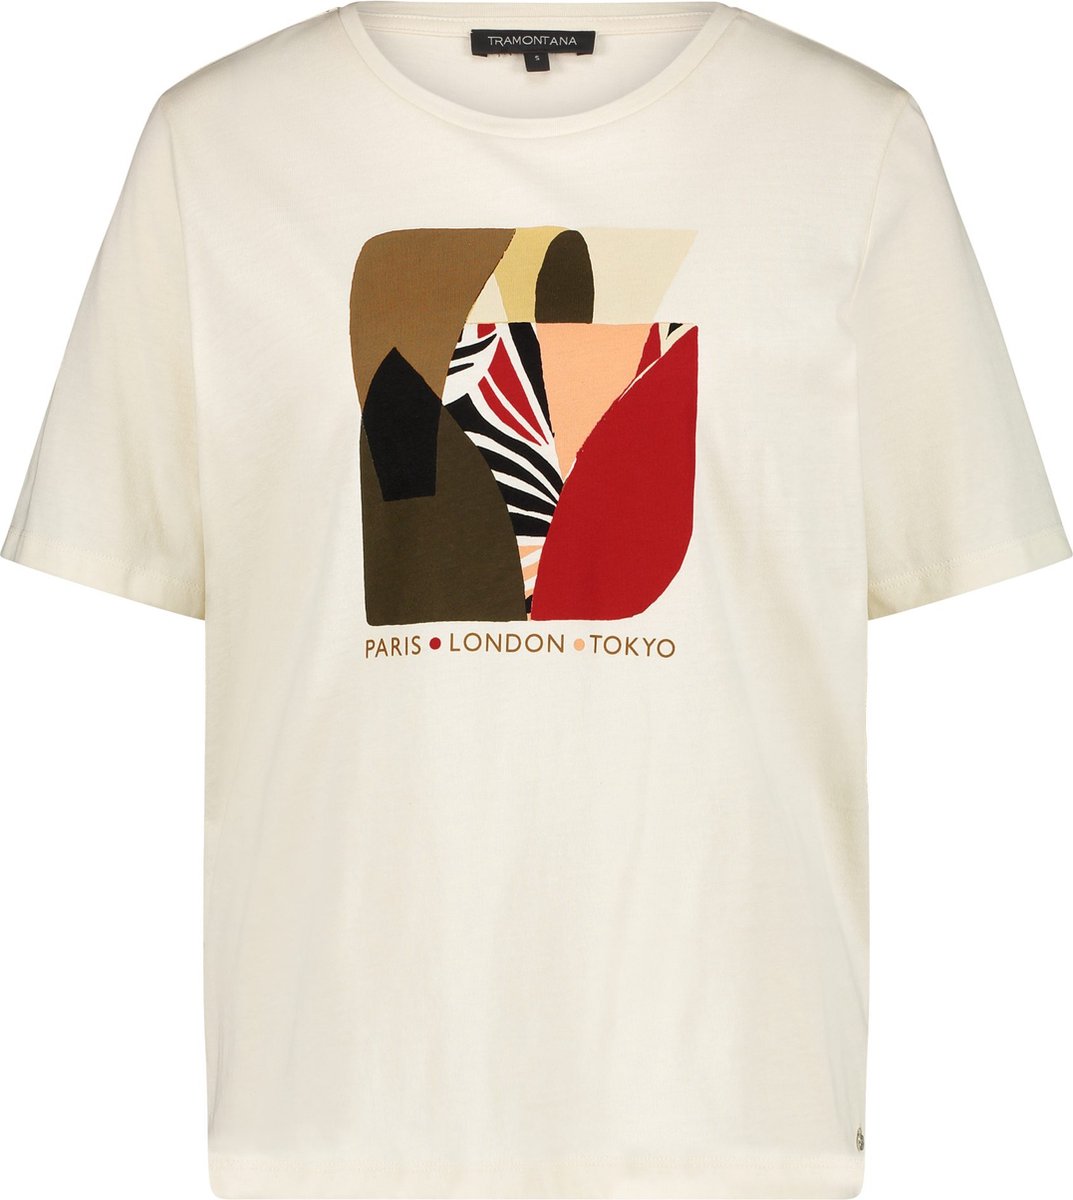 Tramontana D01-06-401 T-Shirt Abstract Artwork Cream